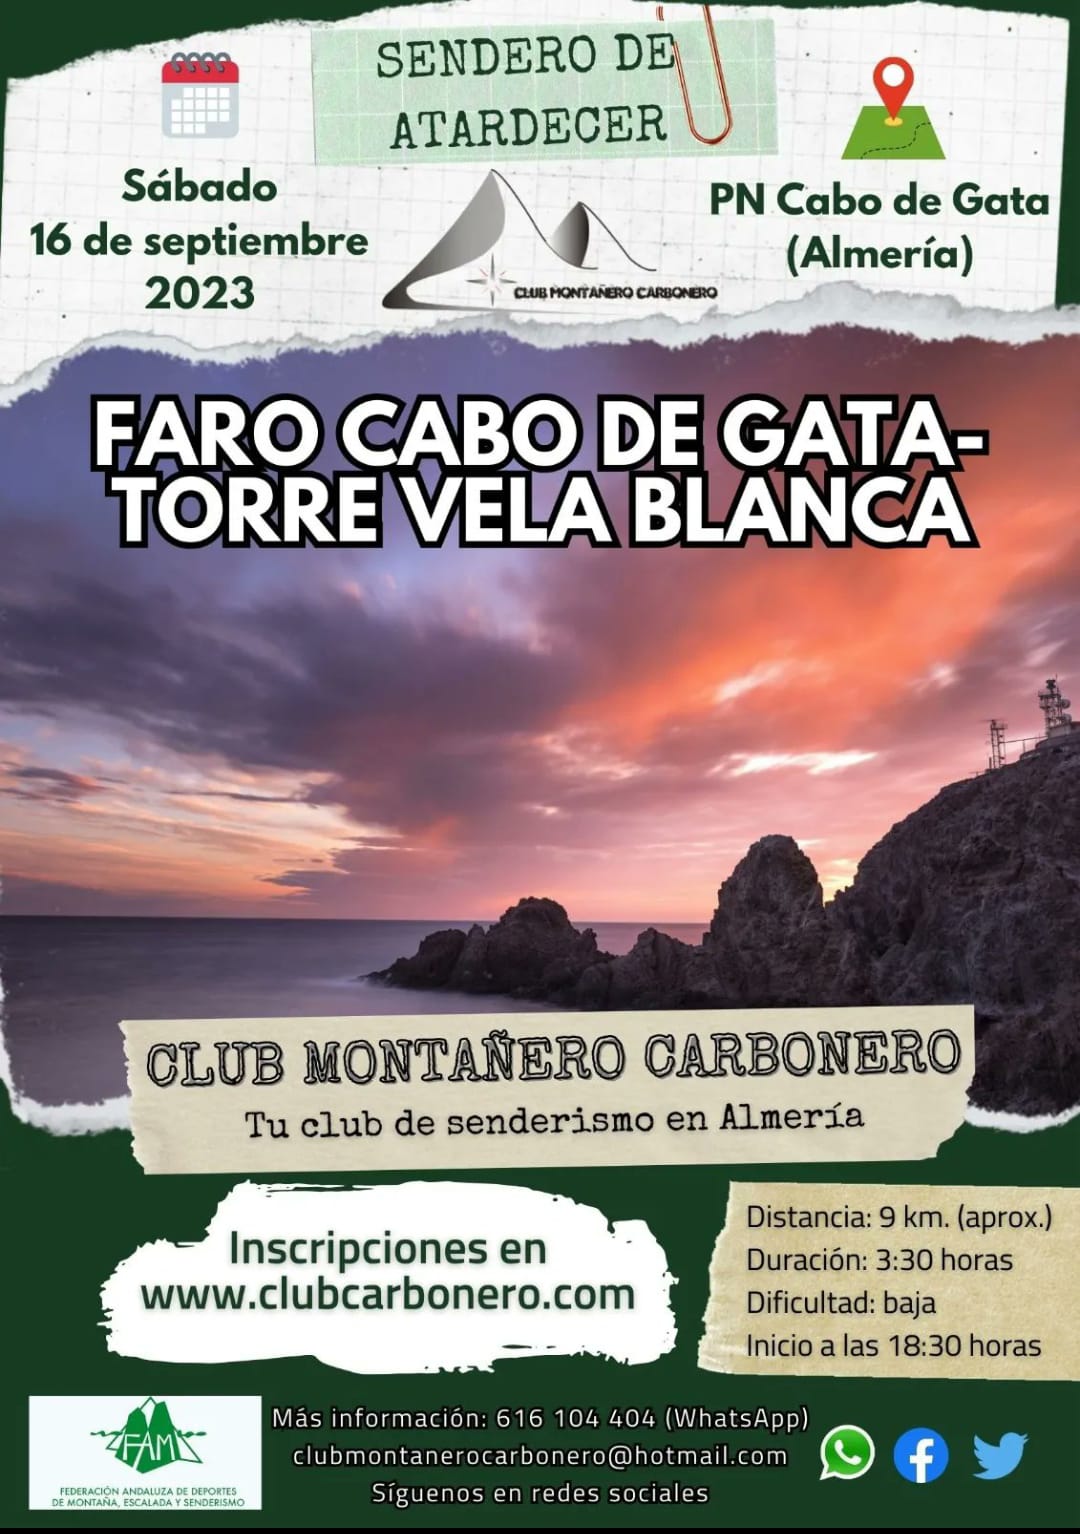 Sendero Faro Cabo de Gata Torre Vela Blanca